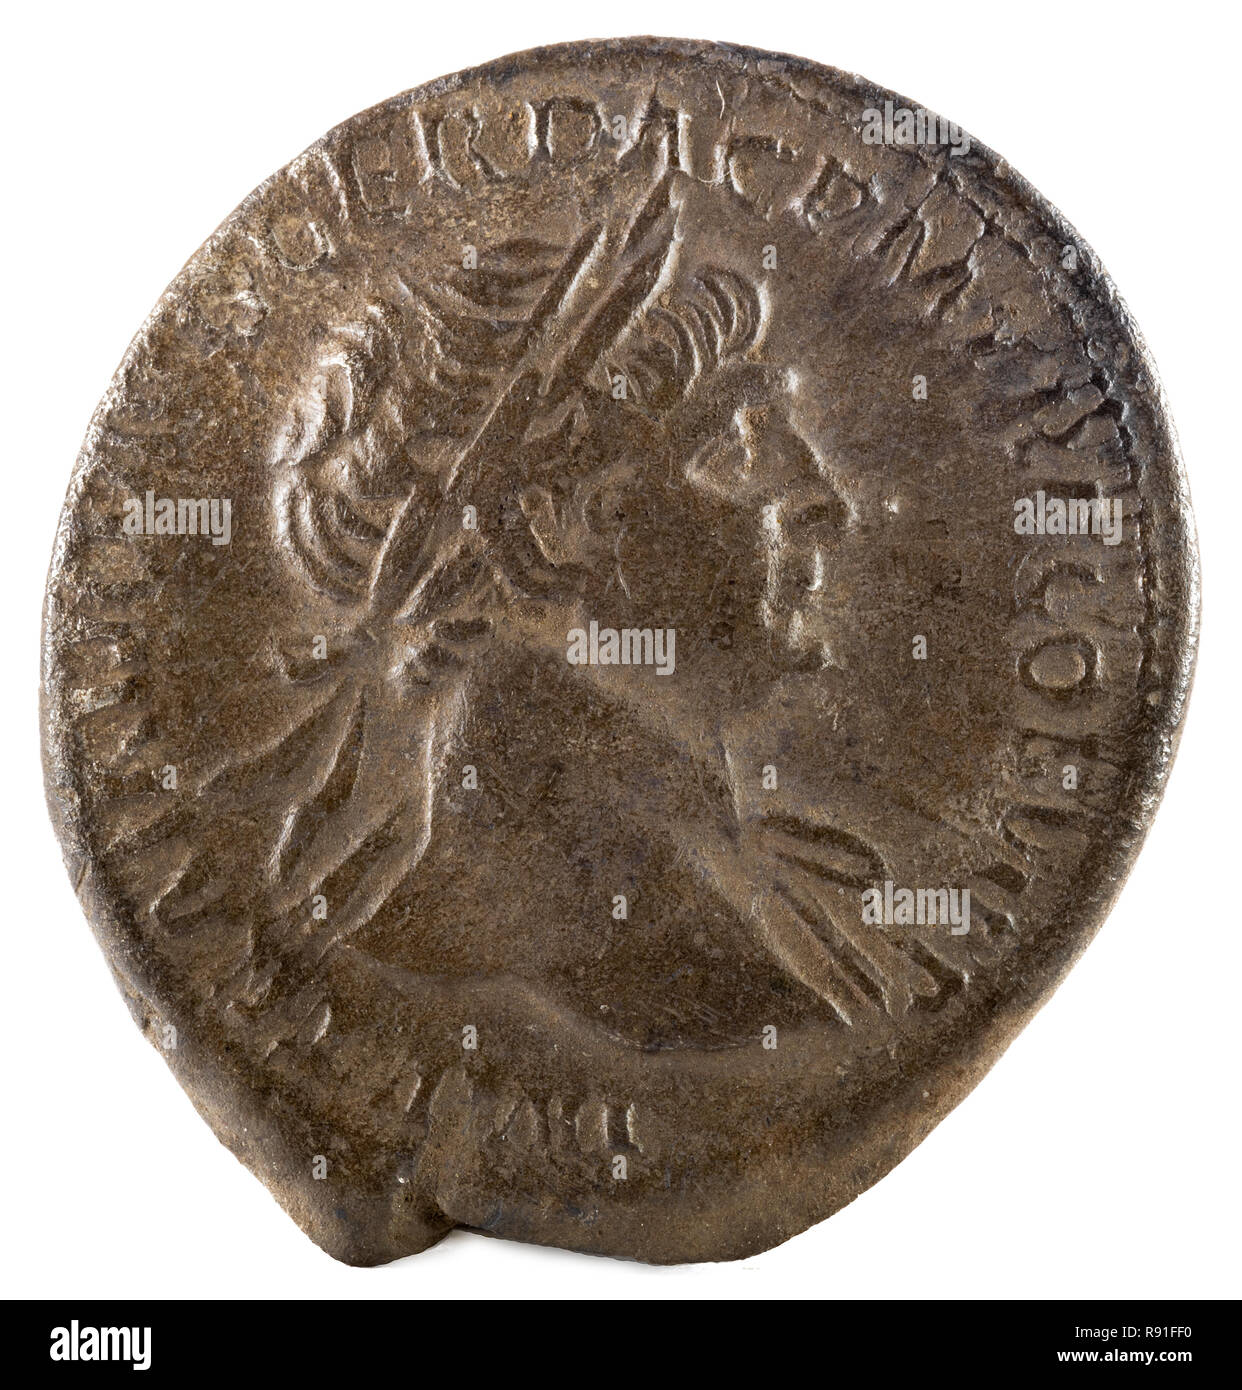 Römischer Denar Silber münze von Kaiser Trajan. Vorderseite. Stockfoto